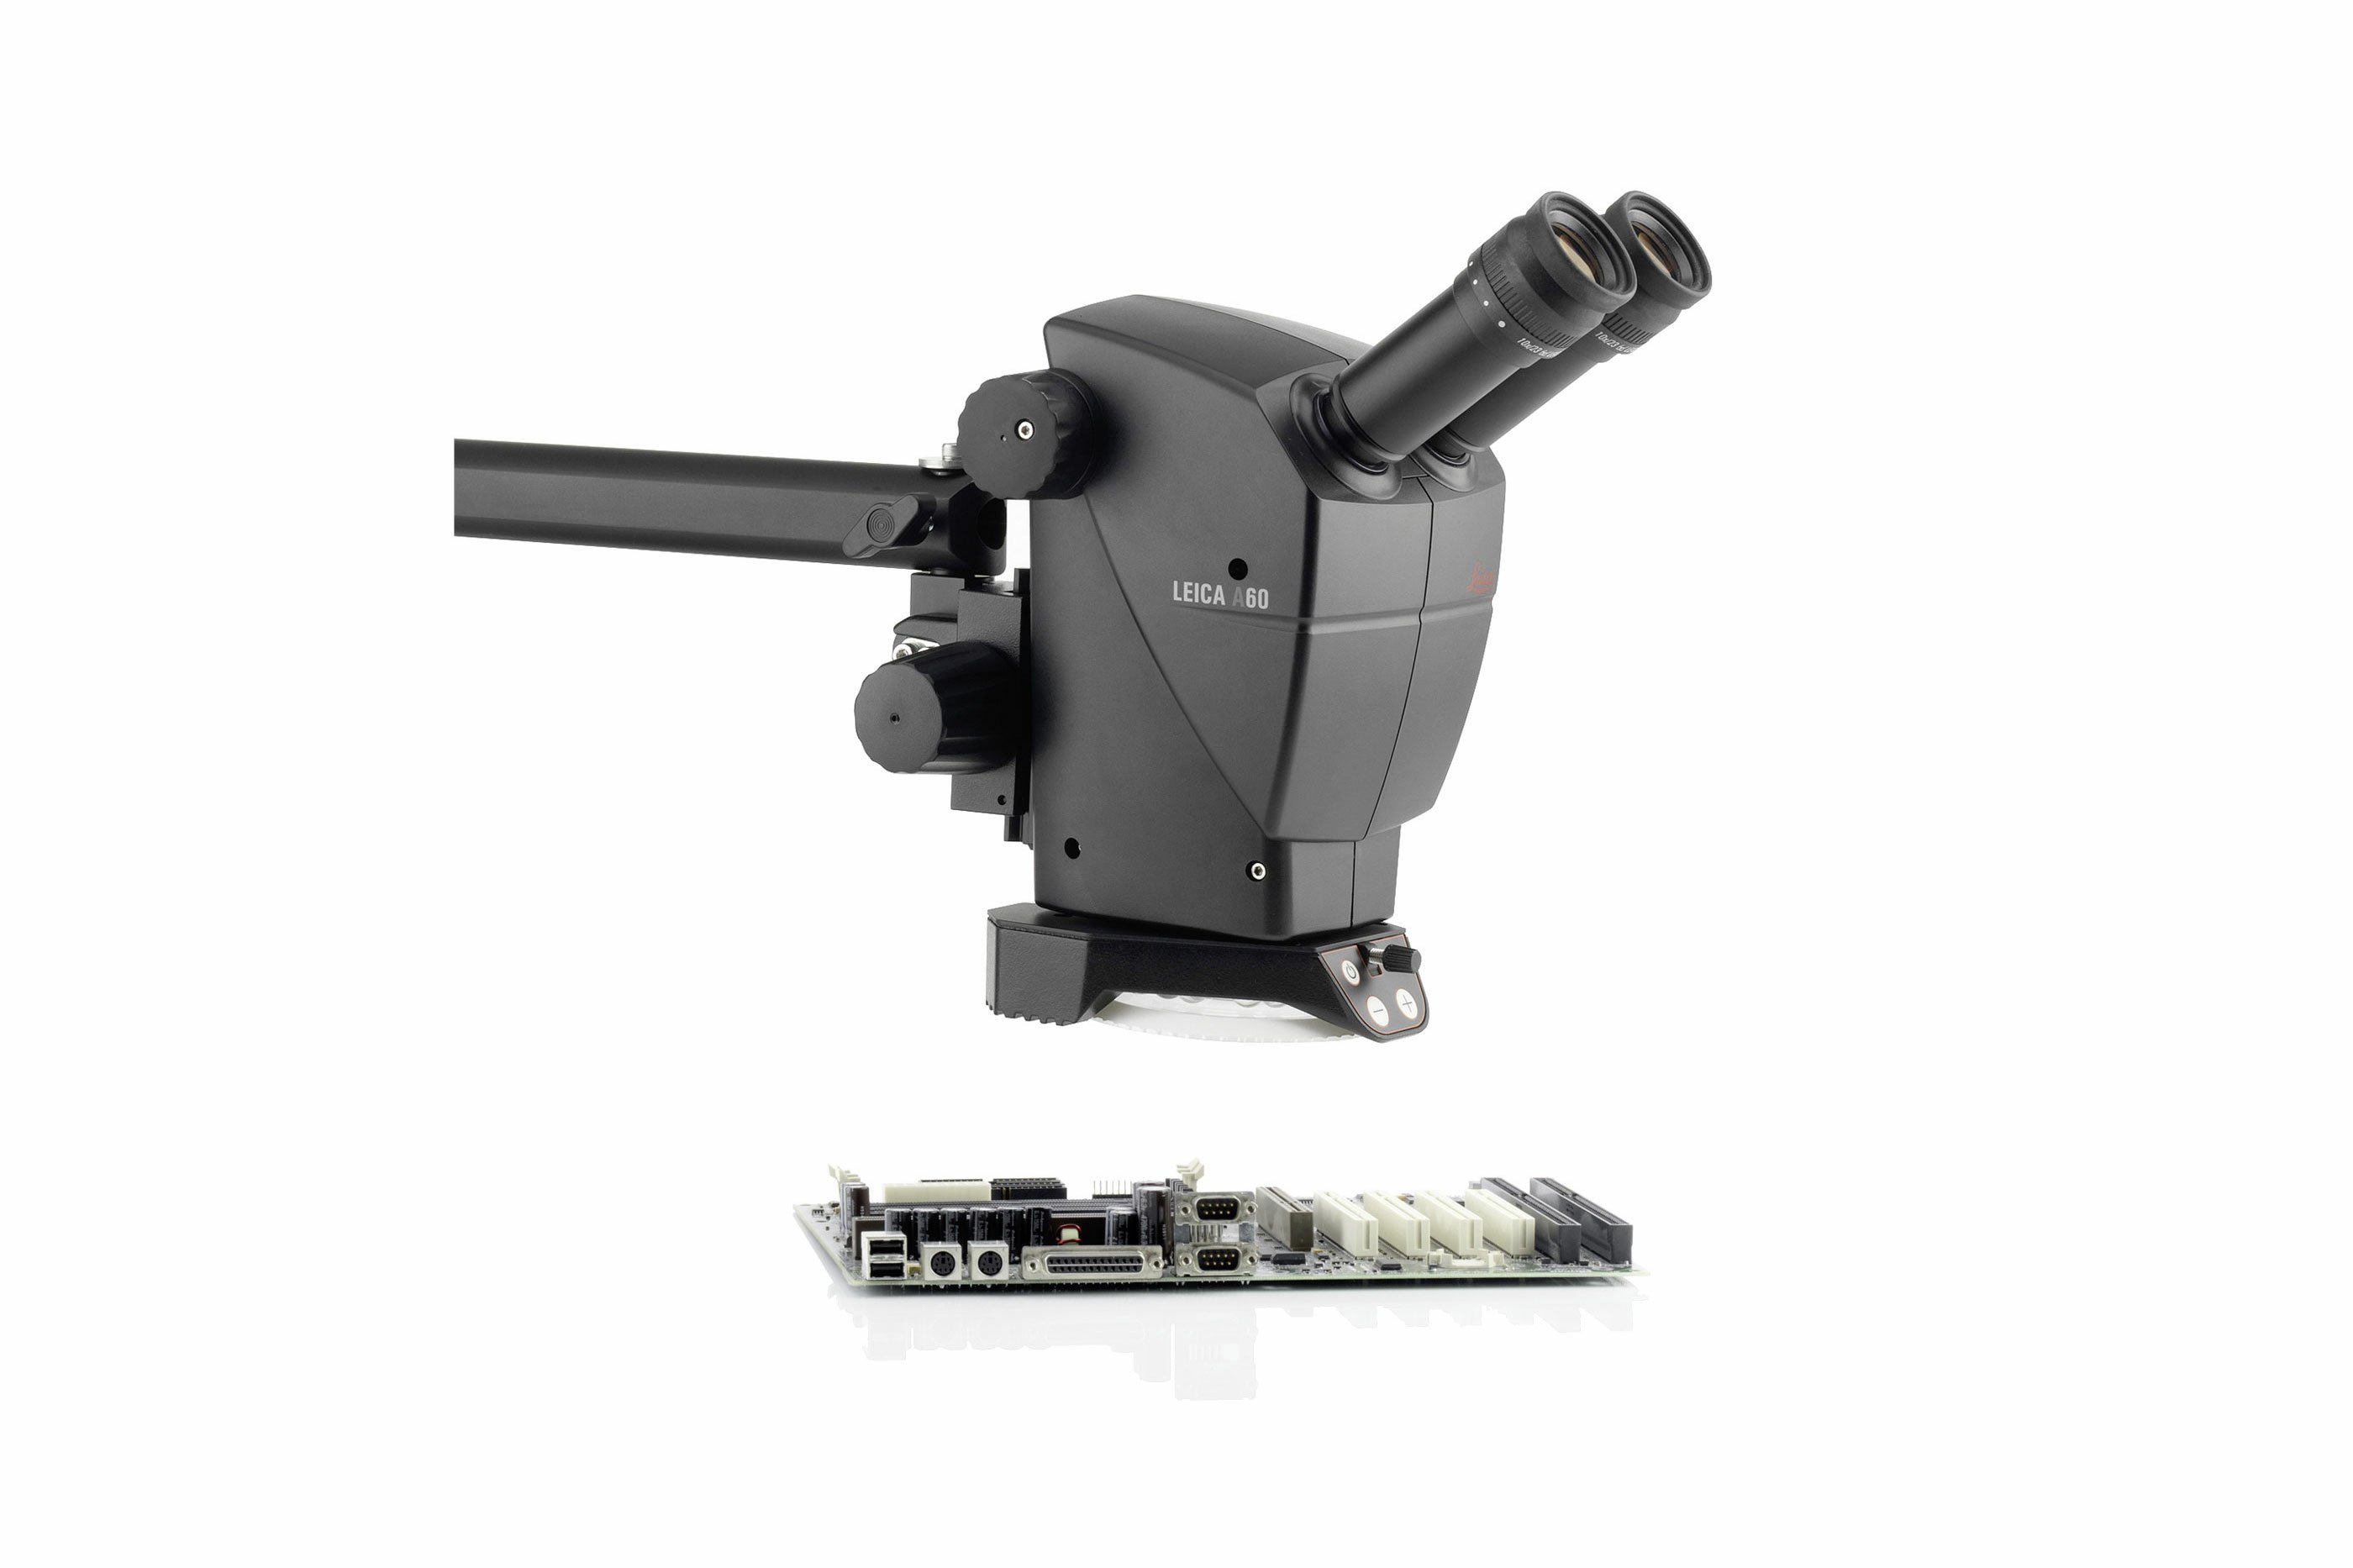 Промышленный стереомикроскоп Leica A60. Австралийскими дистрибьюторами являются IDM Instruments.